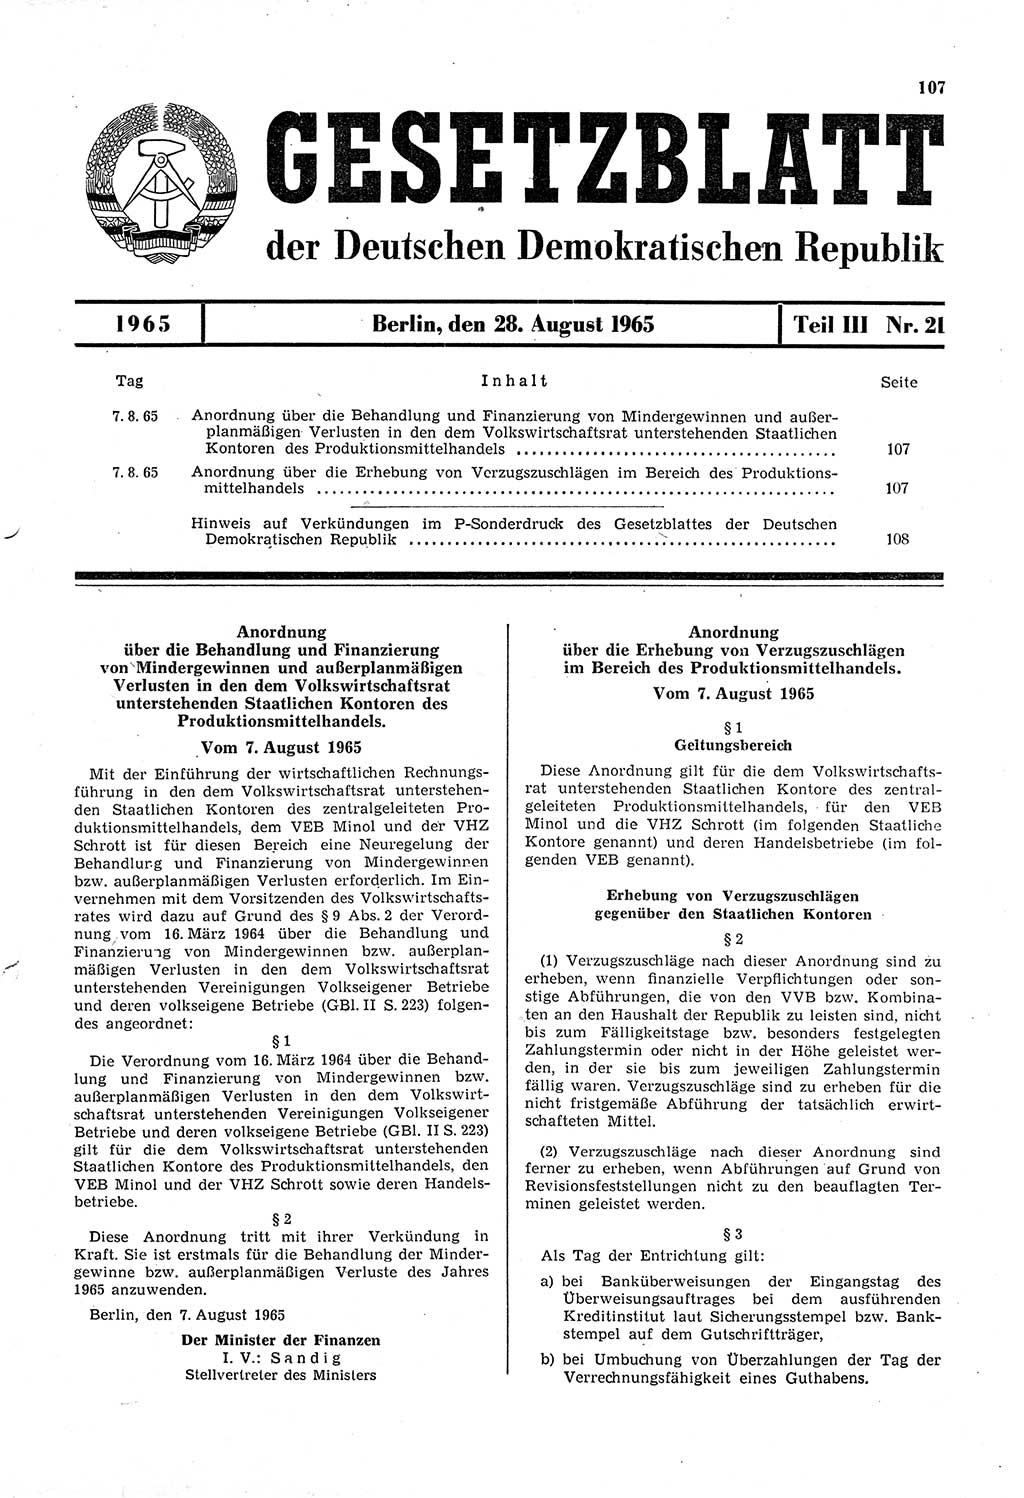 Gesetzblatt (GBl.) der Deutschen Demokratischen Republik (DDR) Teil ⅠⅠⅠ 1965, Seite 107 (GBl. DDR ⅠⅠⅠ 1965, S. 107)